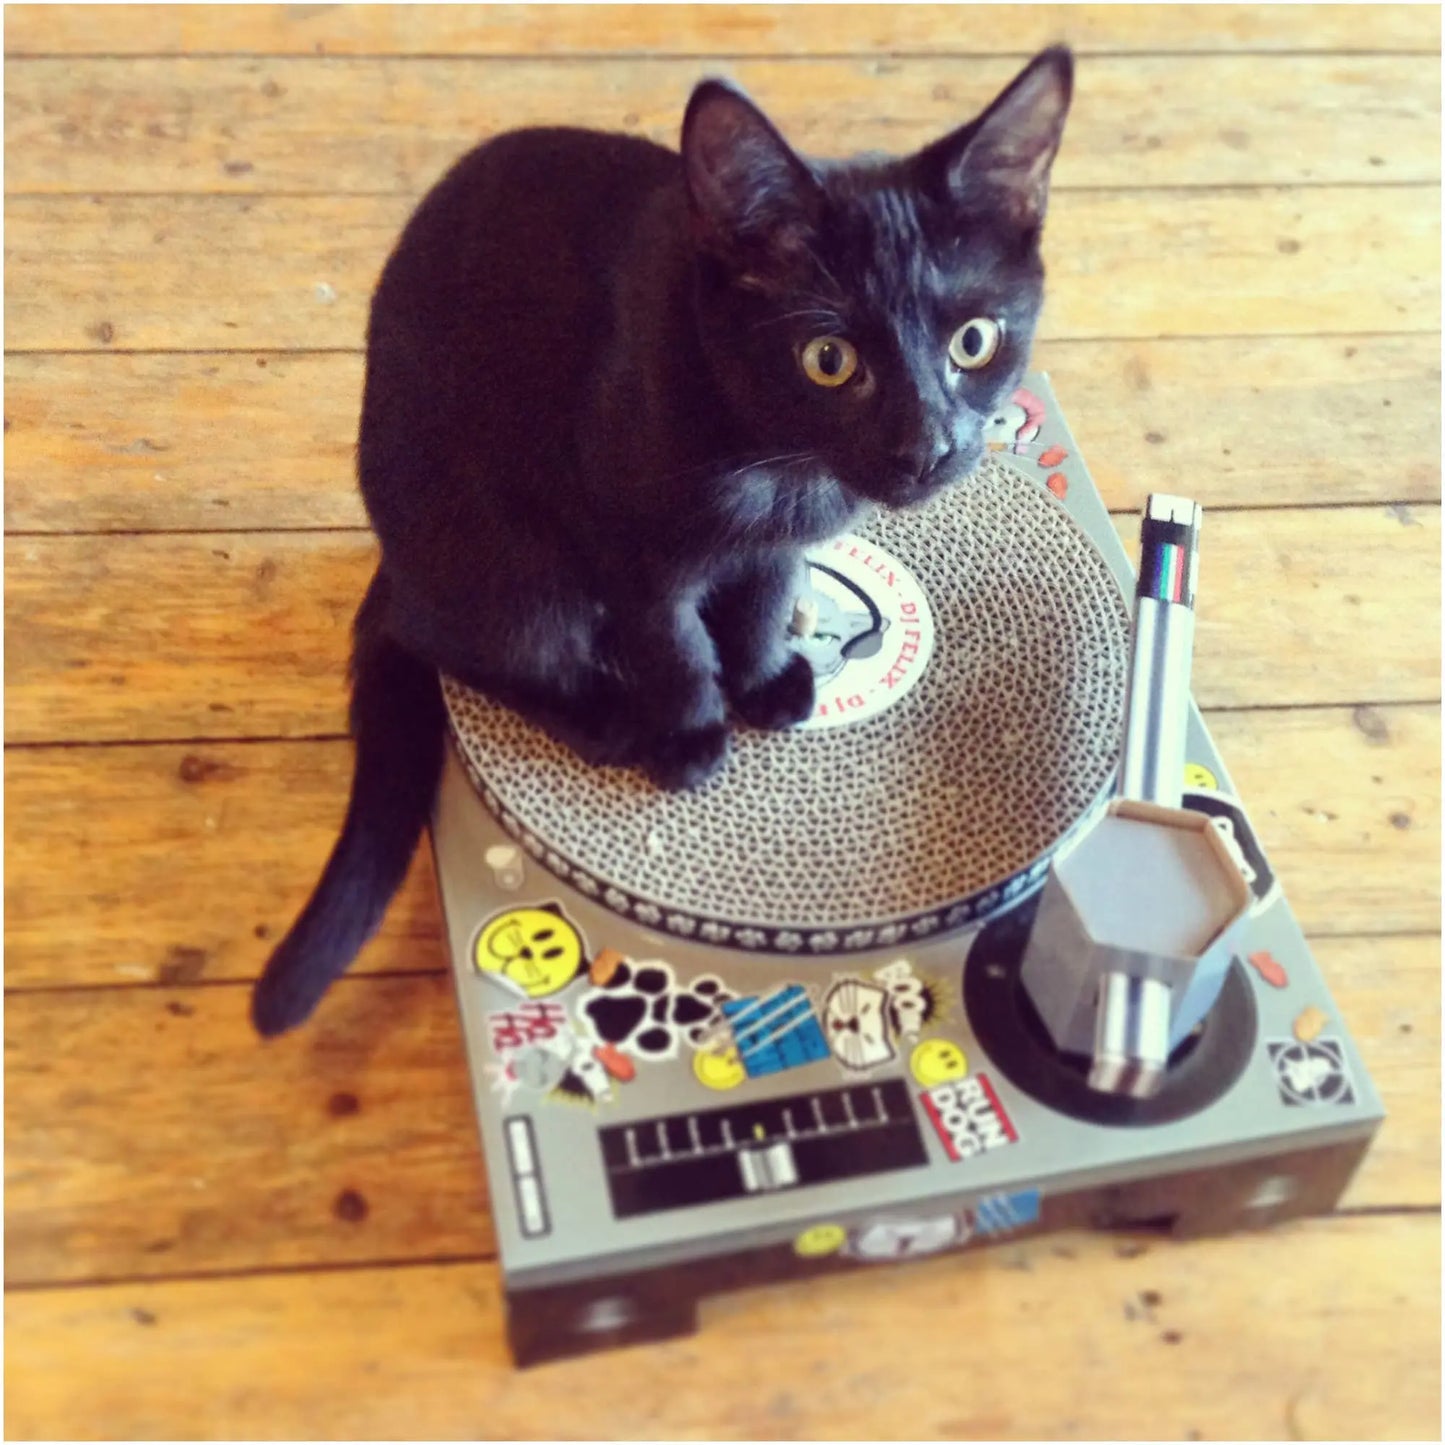 Buy SUCK UK Cat Scratch DJ Decks | Cat Toyss at Woven Durham